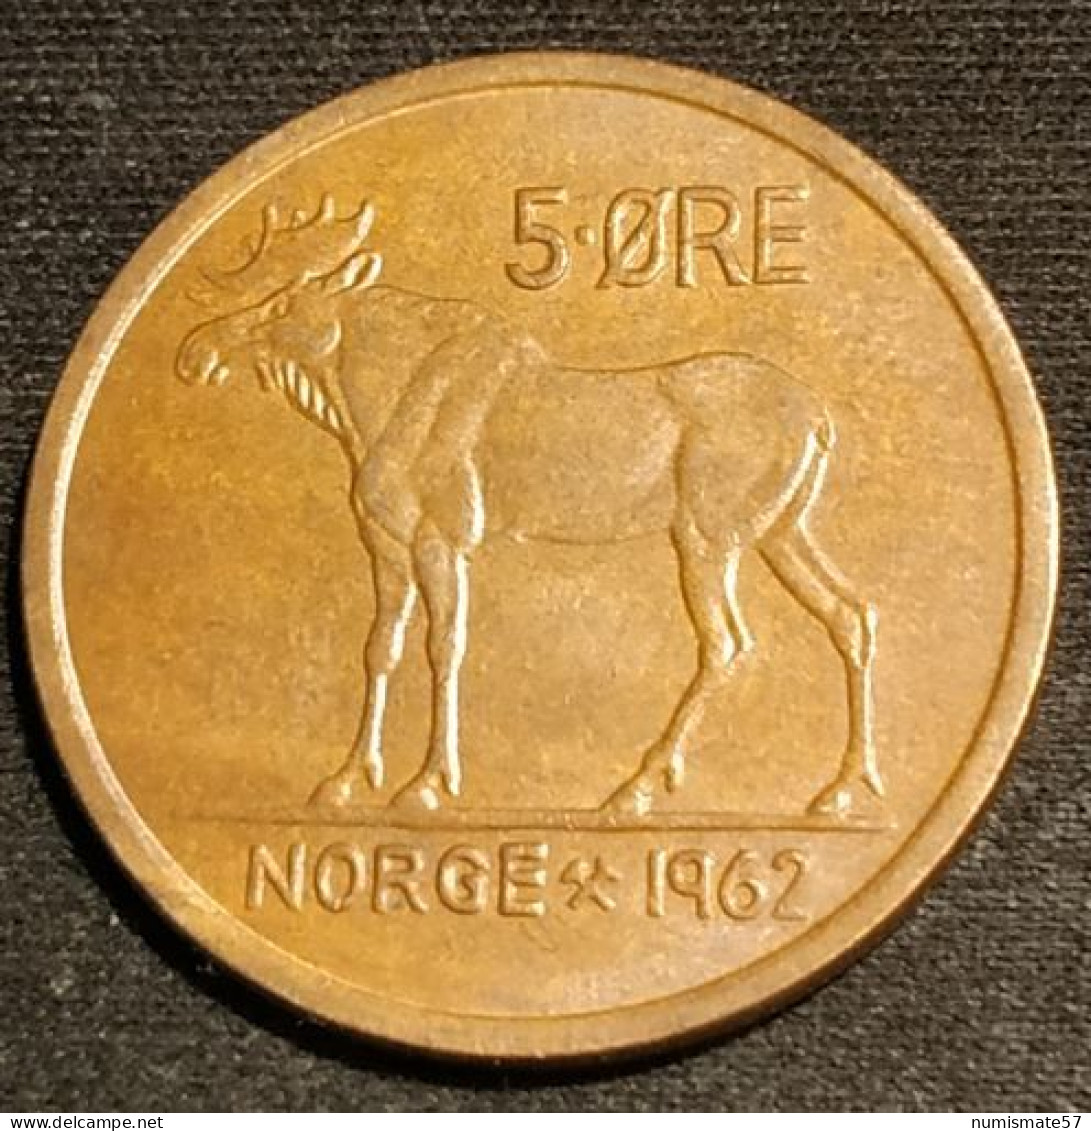 NORVEGE - NORWAY - 5 ORE 1962 - Olav V - élan - KM 405 - ( øre ) - Norvège